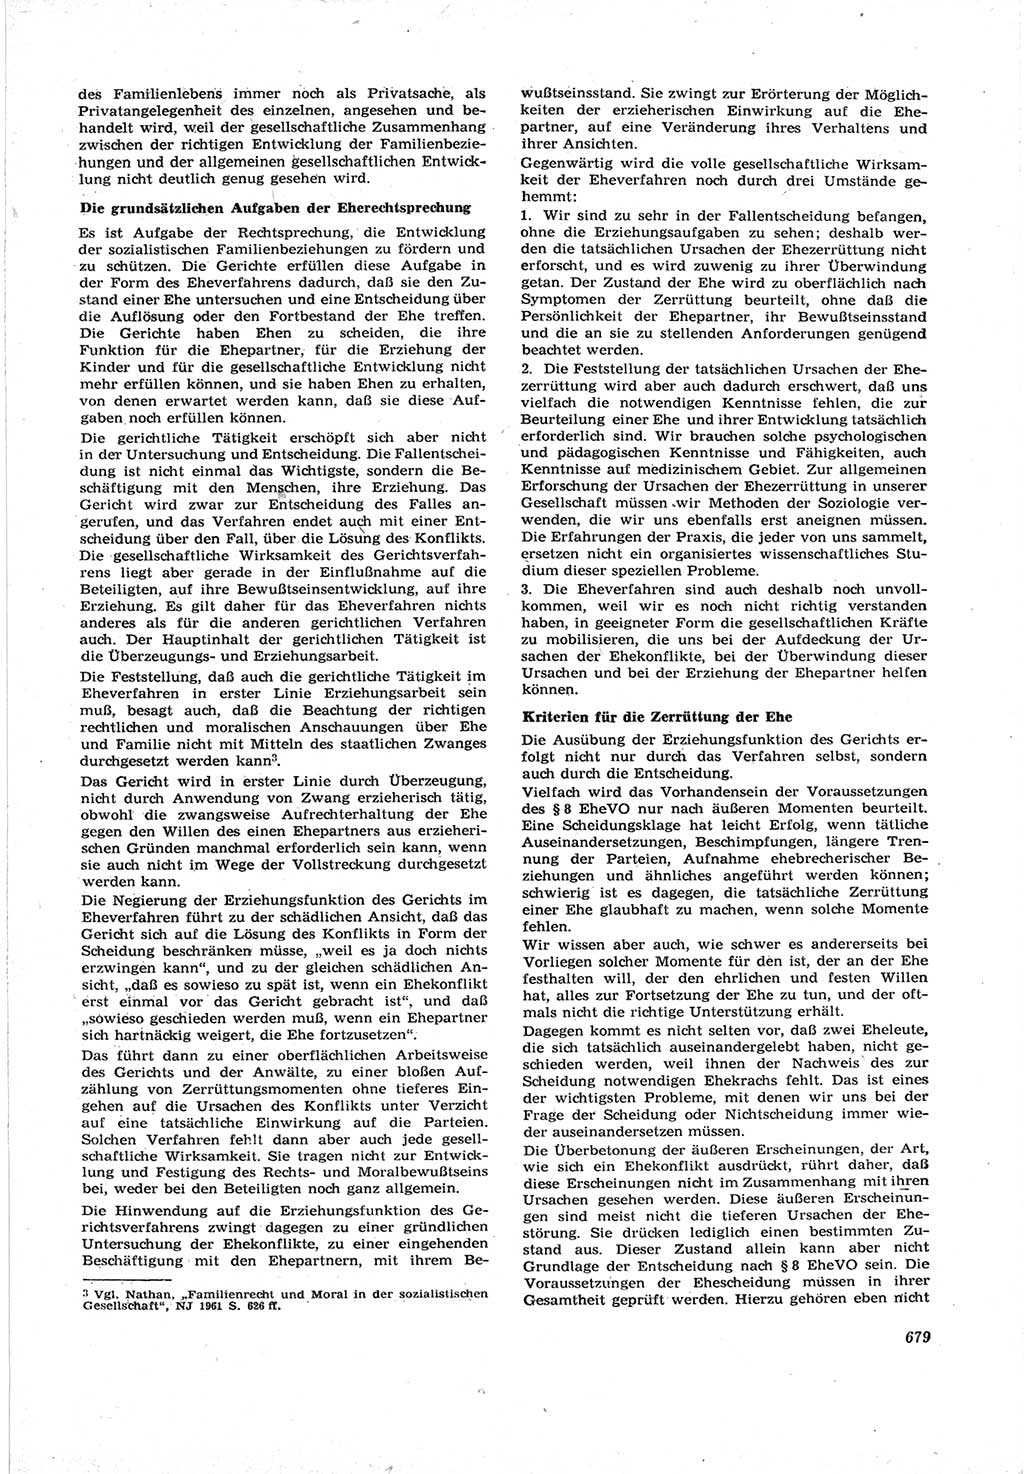 Neue Justiz (NJ), Zeitschrift für Recht und Rechtswissenschaft [Deutsche Demokratische Republik (DDR)], 17. Jahrgang 1963, Seite 679 (NJ DDR 1963, S. 679)